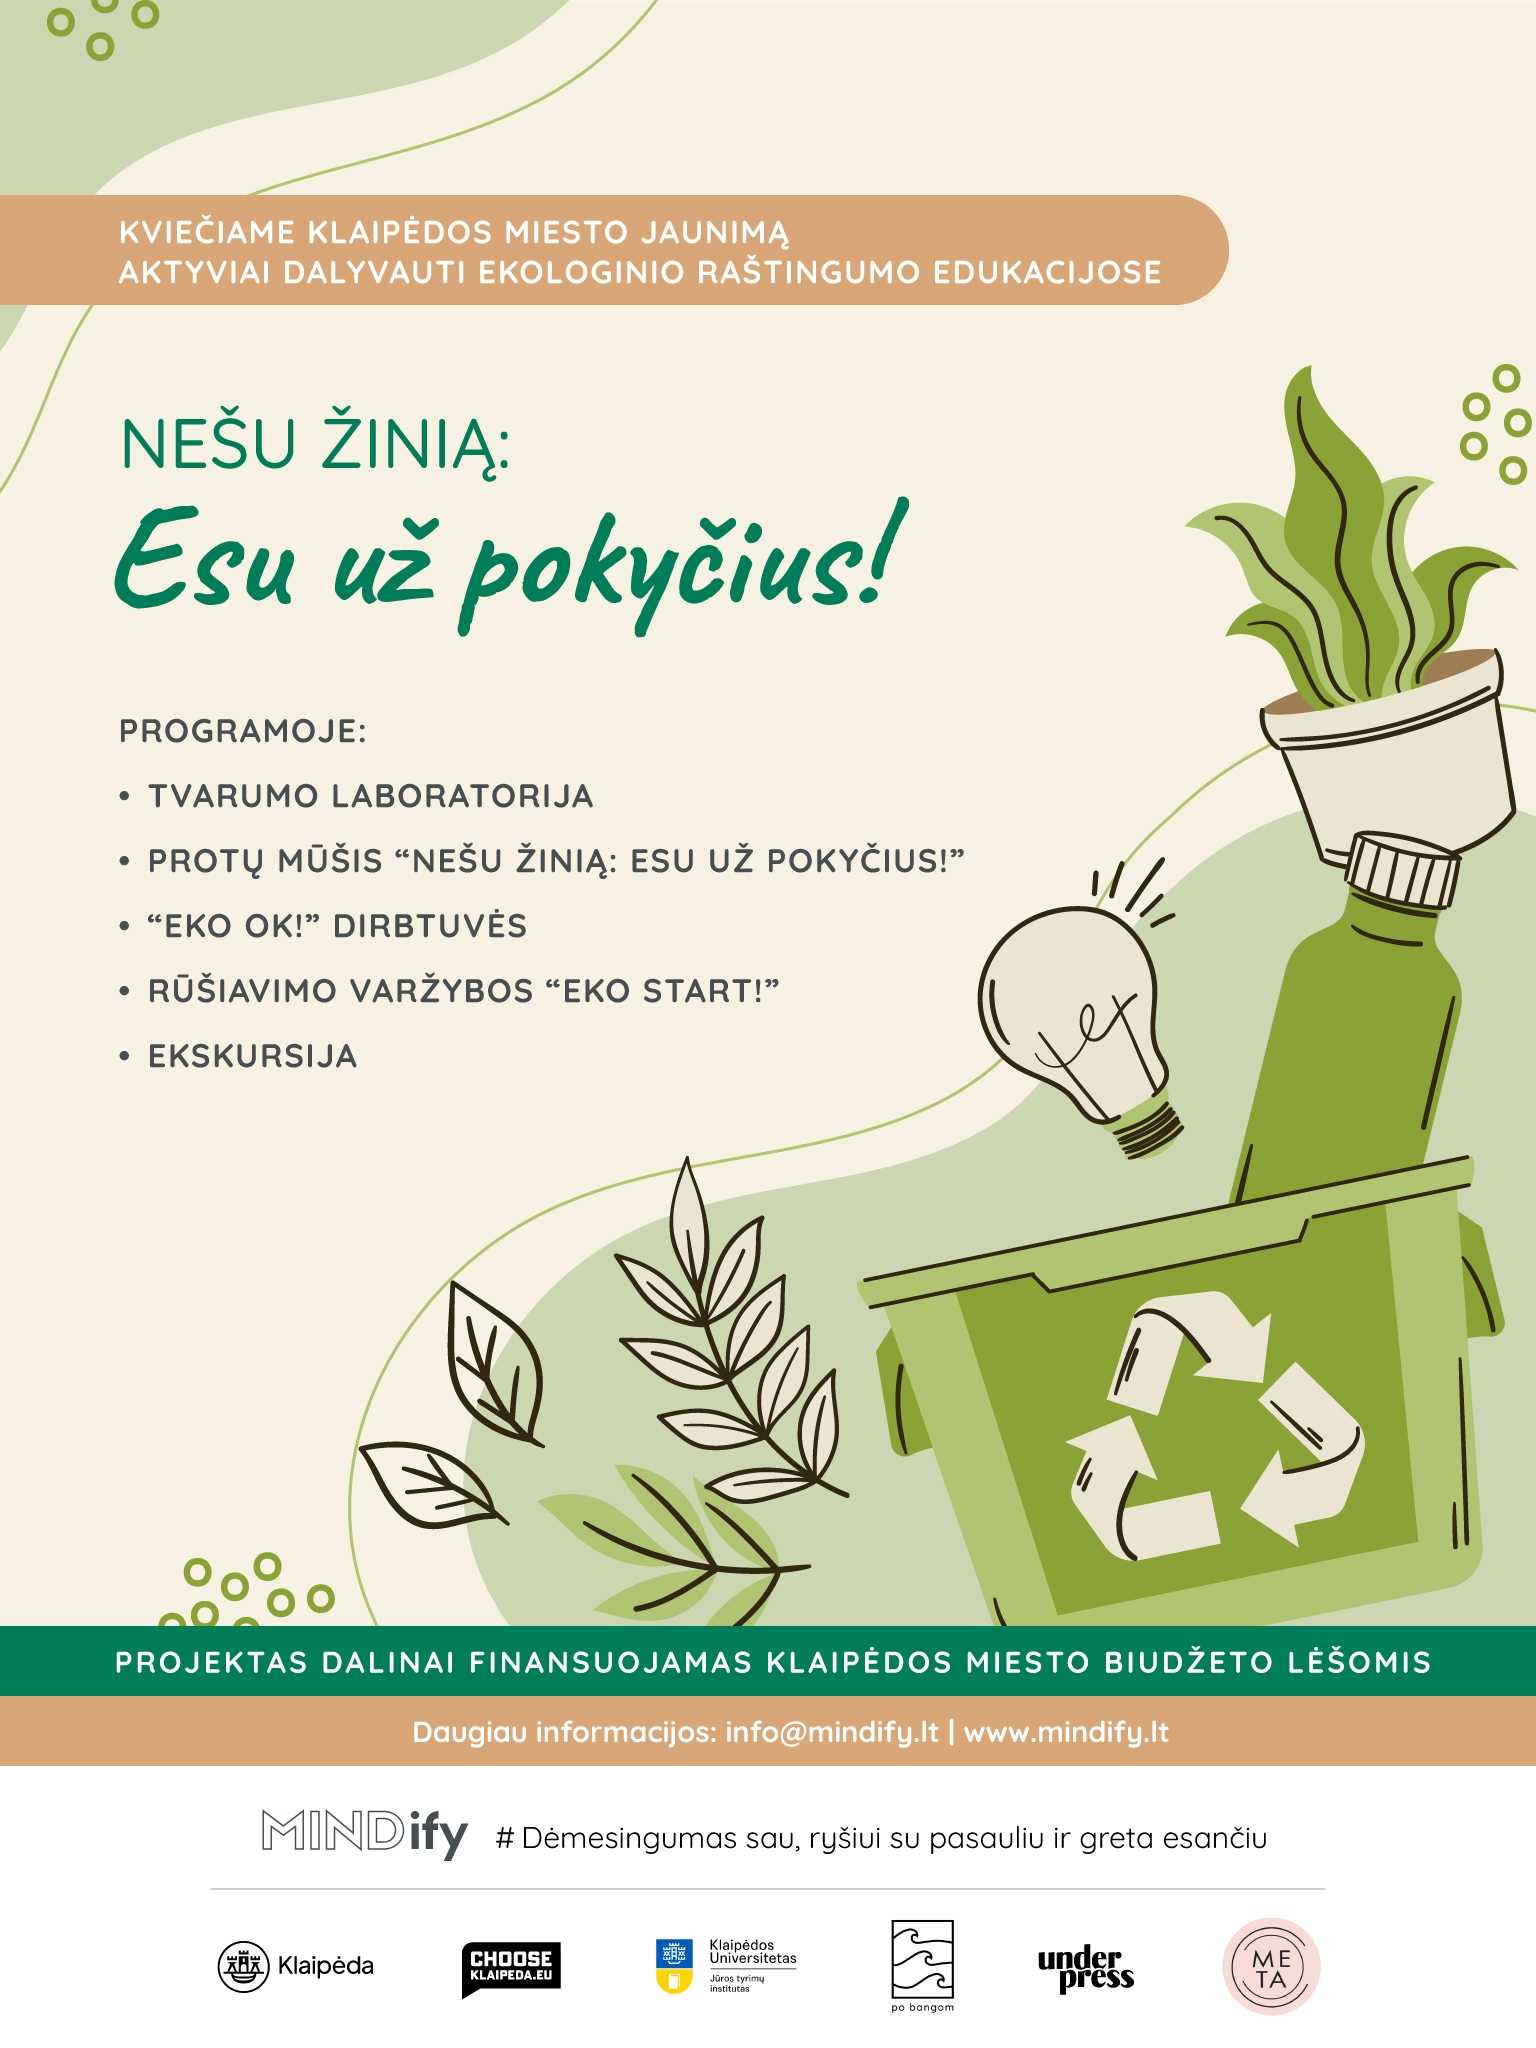 Kviečiame Klaipėdos miesto jaunimą aktyviai dalyvauti ekologinio raštingumo edukacijose